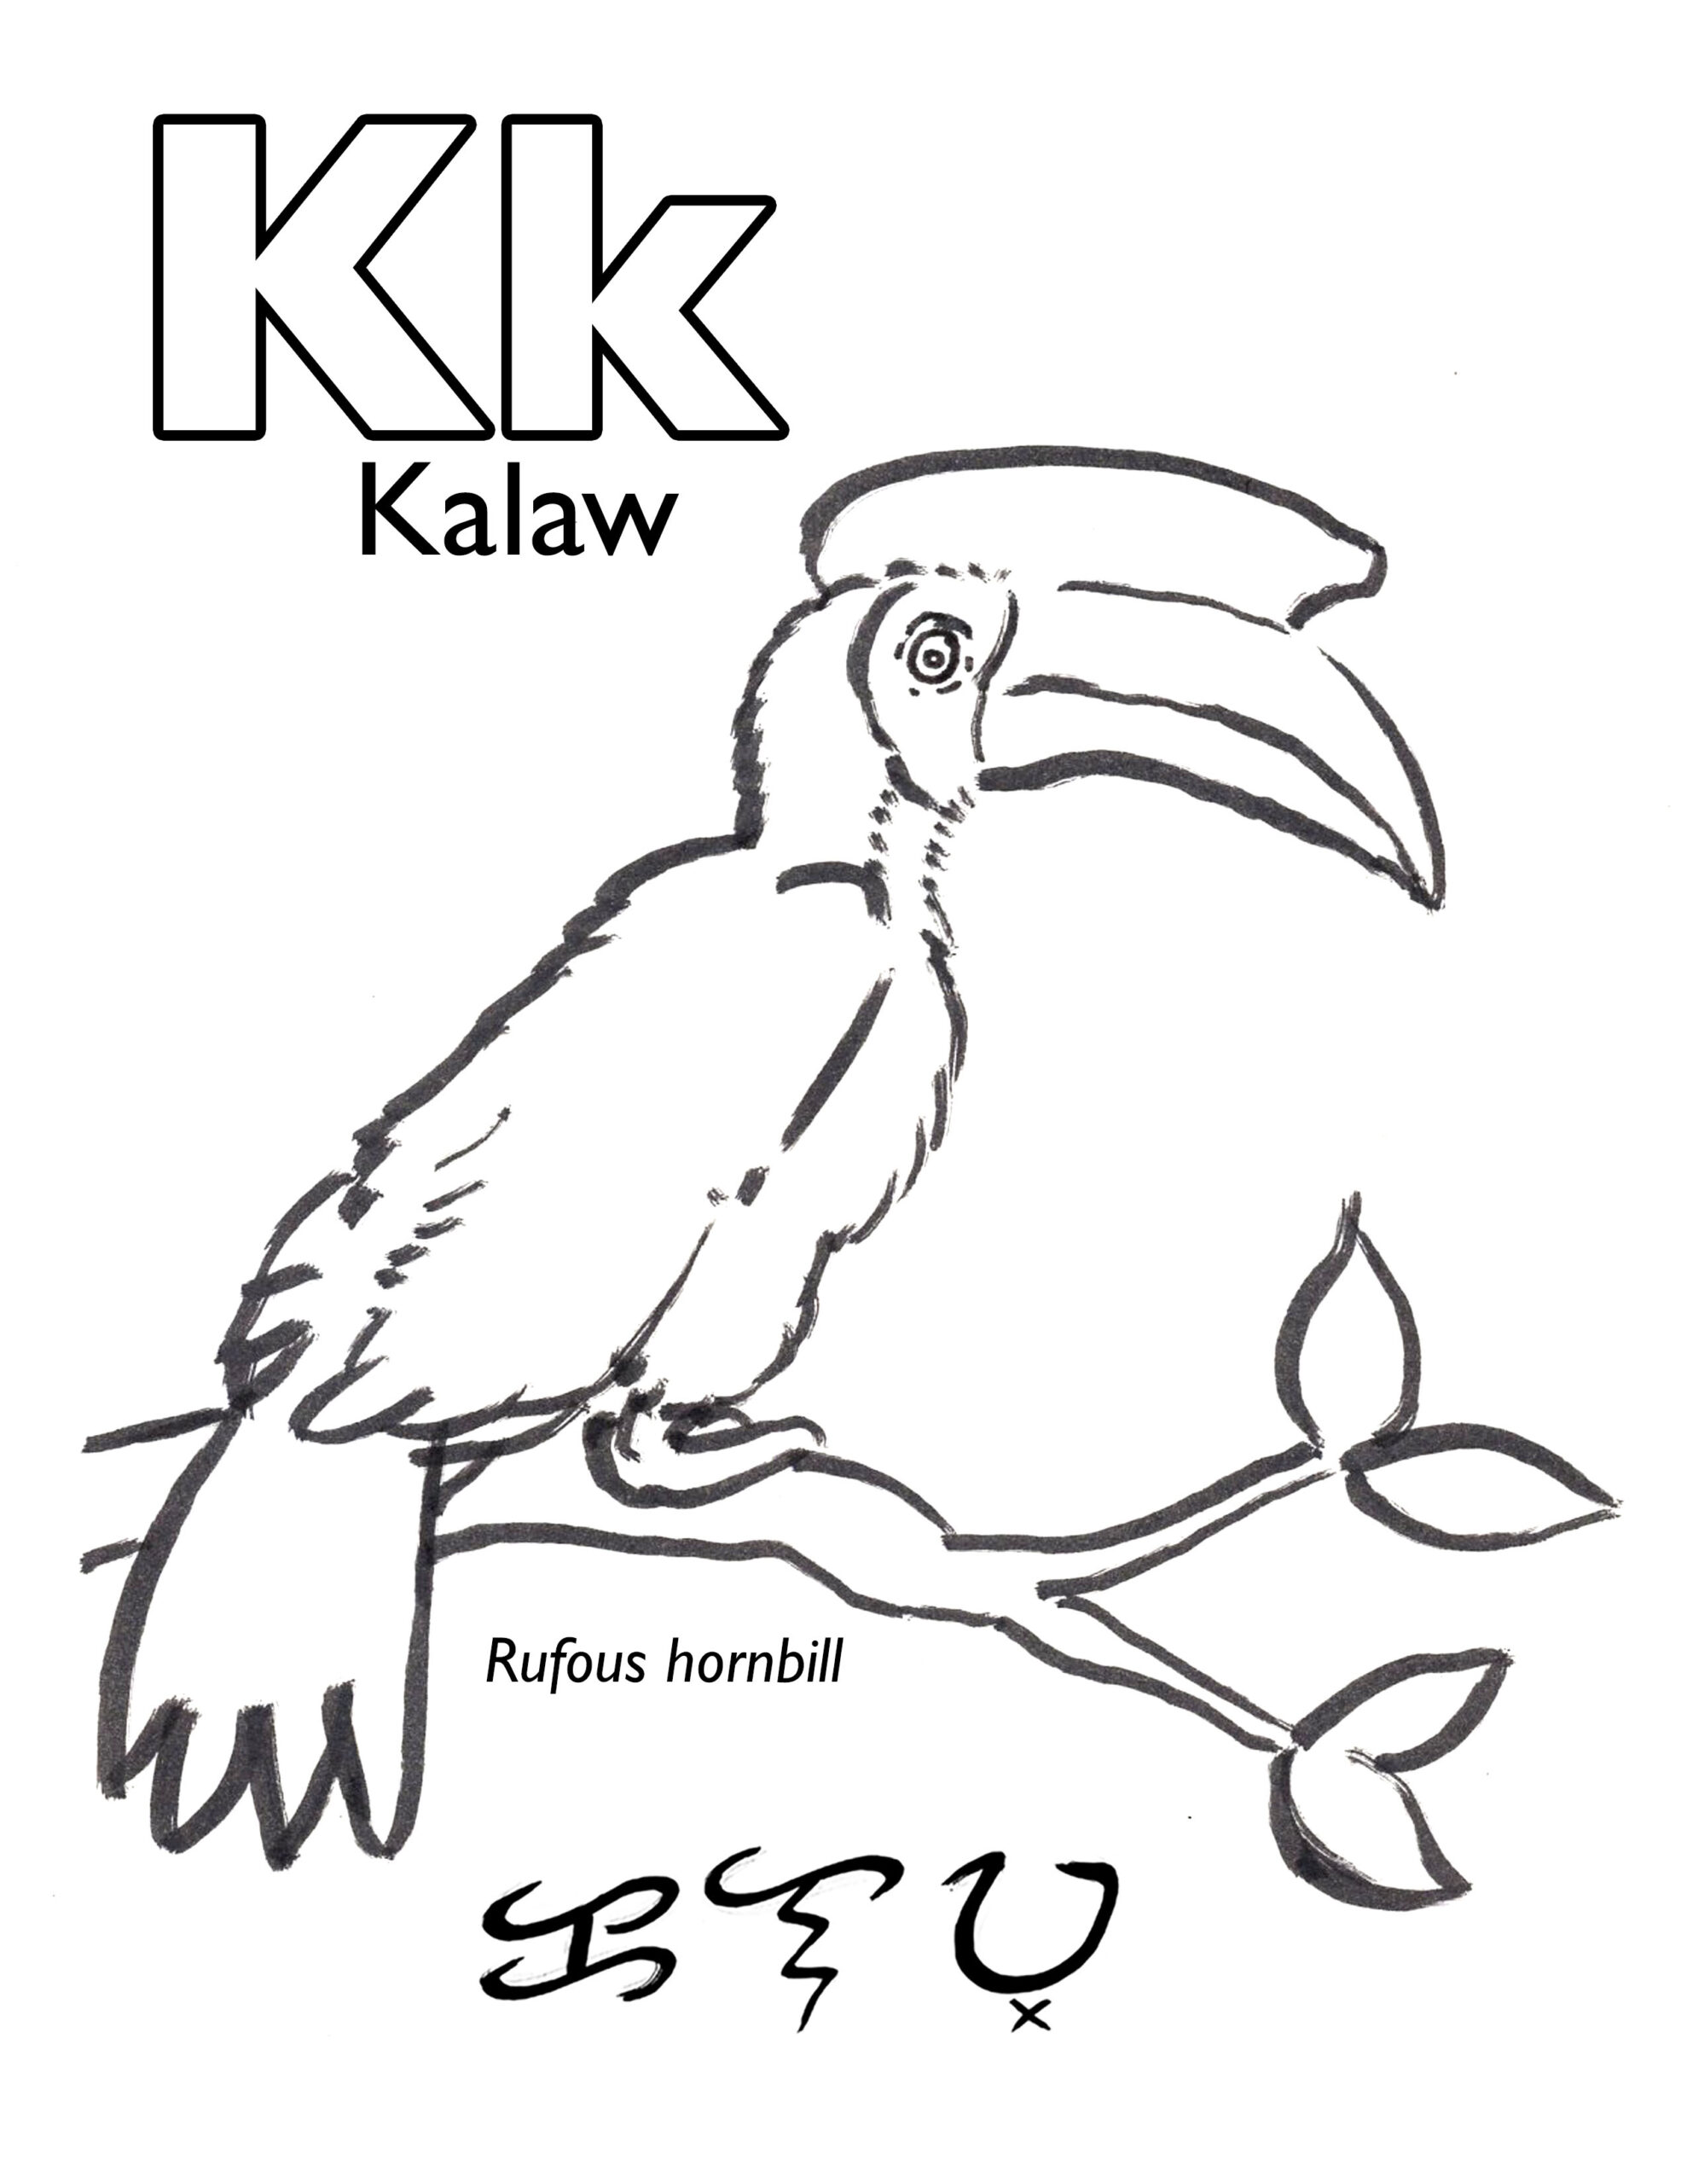 Kalaw